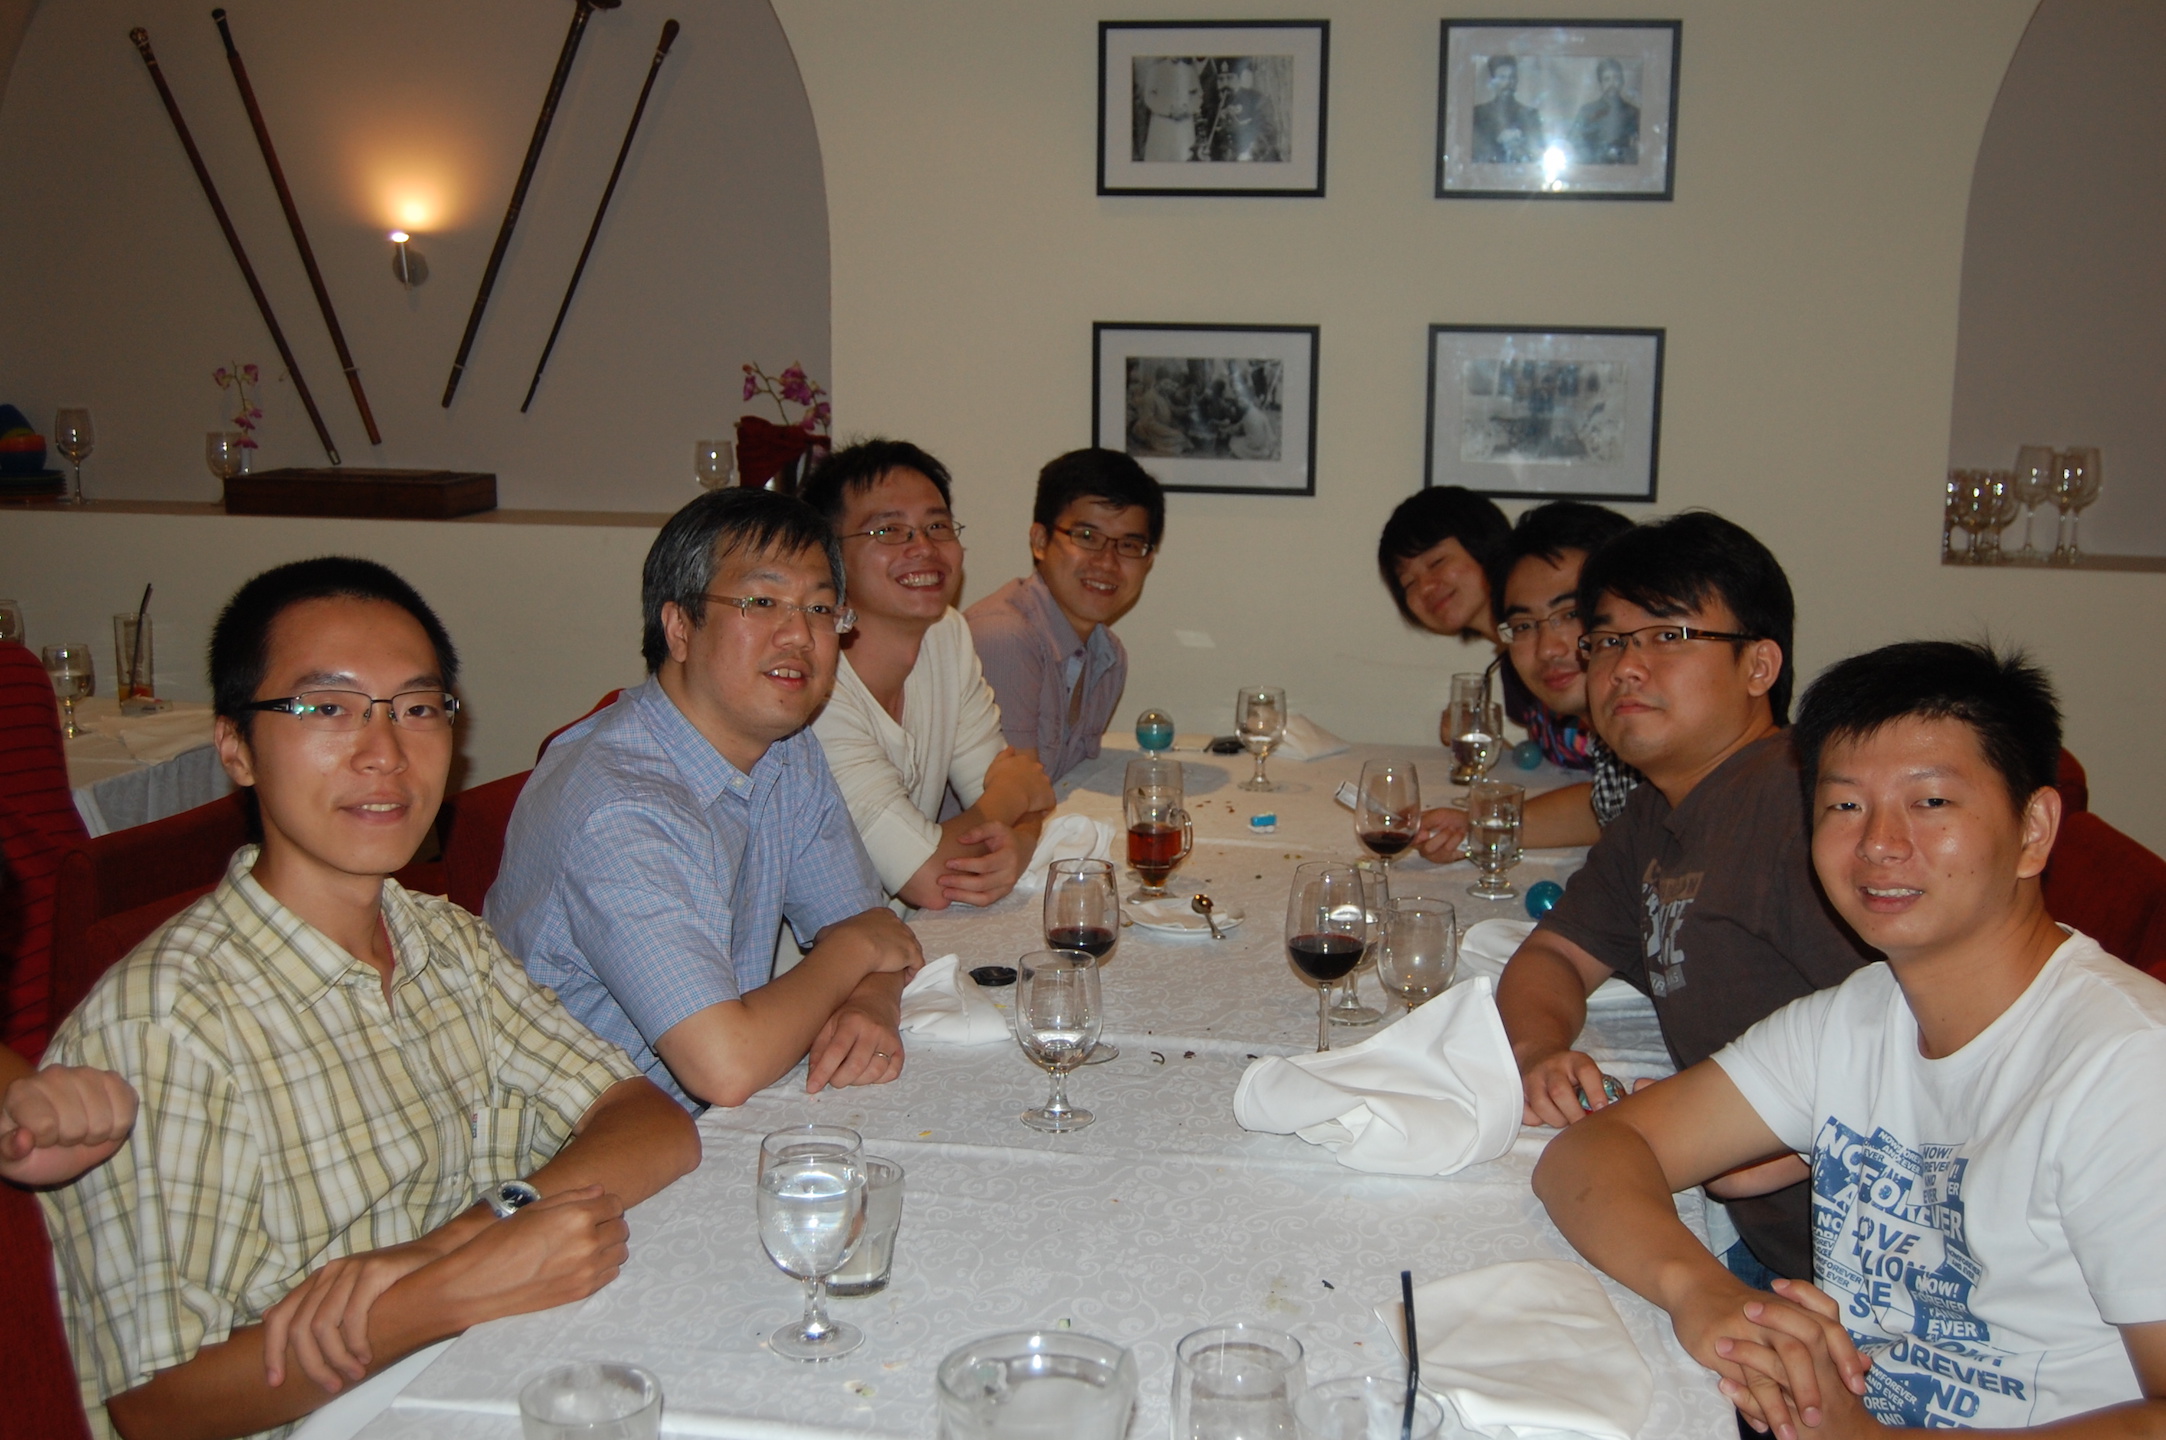 <b>6 Aug 2012 - Shiraz @ Clarke Quay</b><br> Front to Back: Left row : Anqi Cui, Min-Yen Kan, Jin Zhao, Jun Ping Ng Right row: Zhong Ming Dai, Eric Yulianto, Xiangnan He, Tao Chen